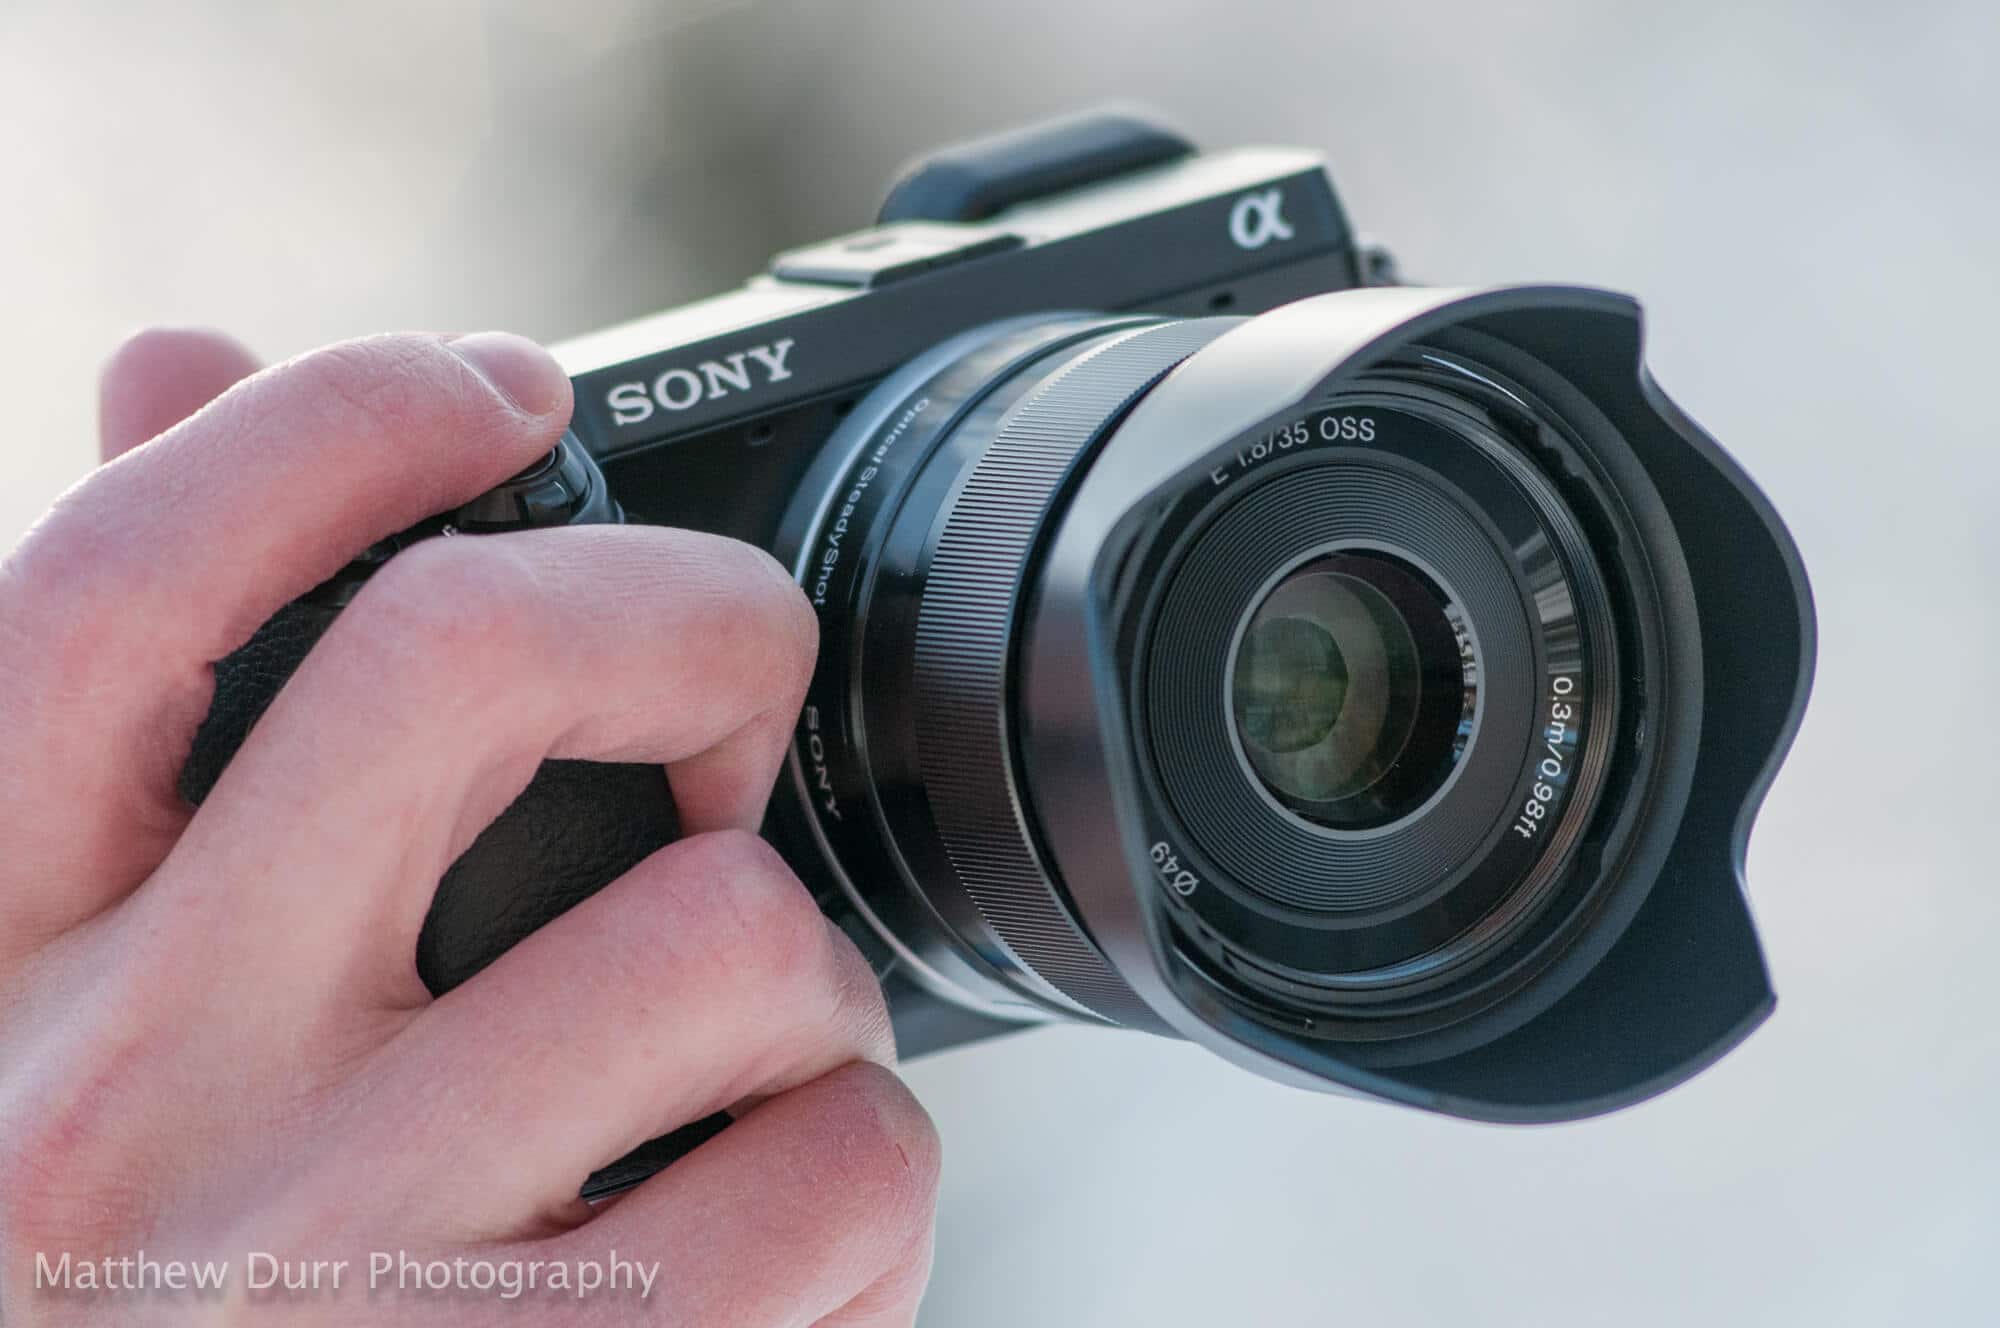 Review: Lente Sony E 35mm f/1.8 OSS (SEL35F18)